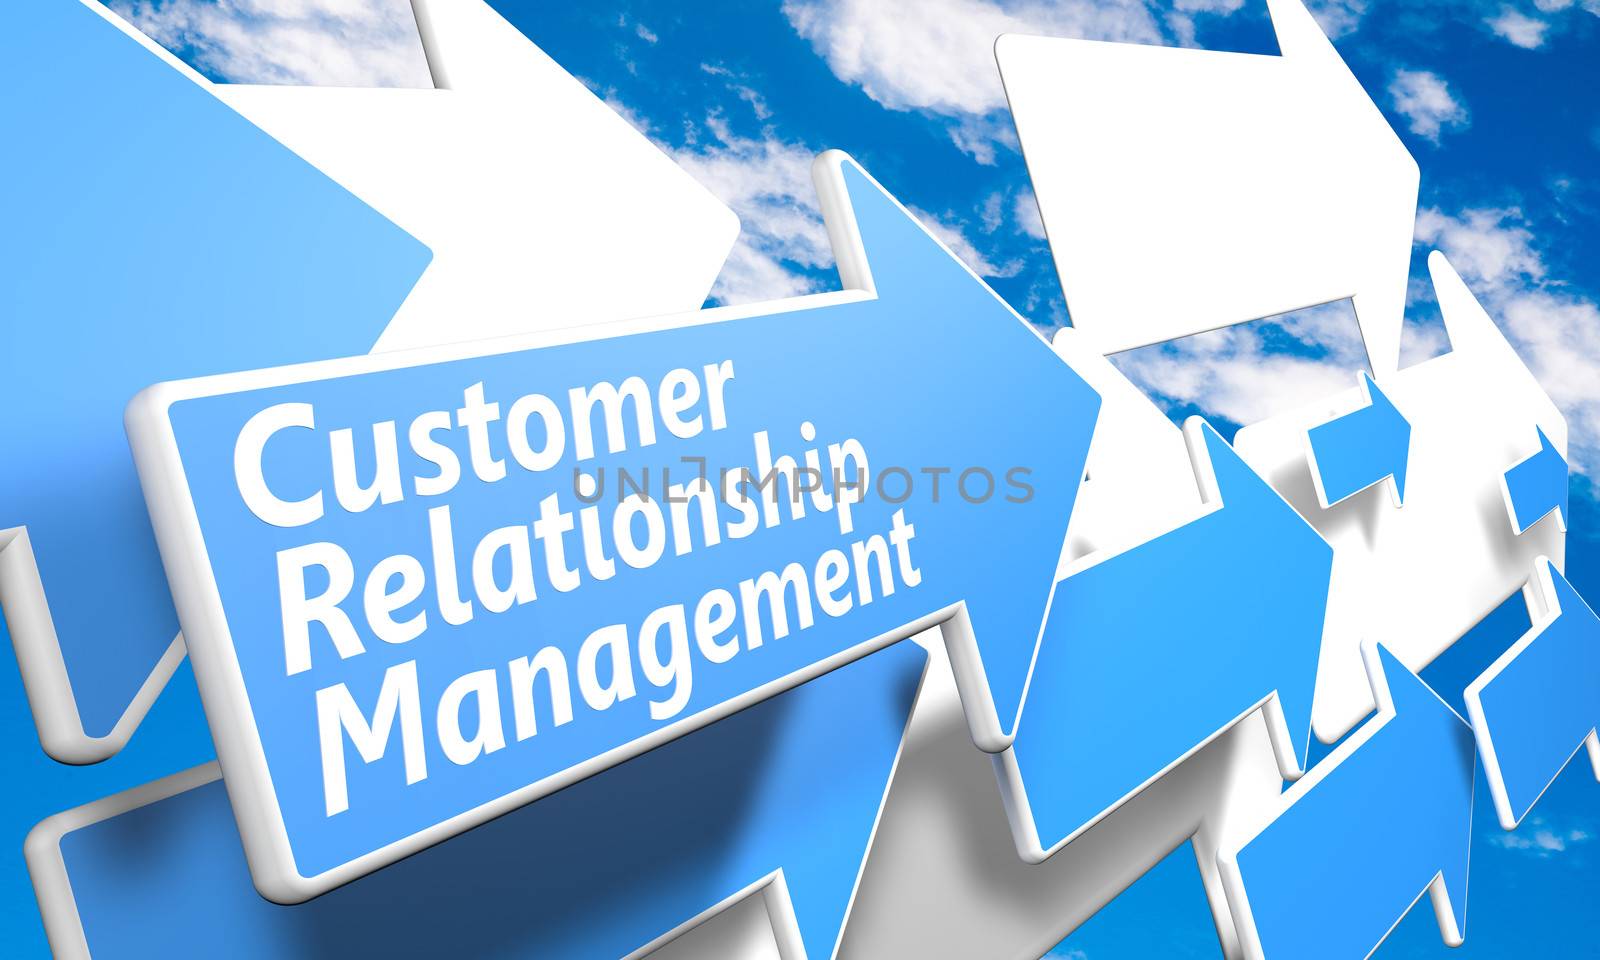 Customer Relationship Management by Mazirama